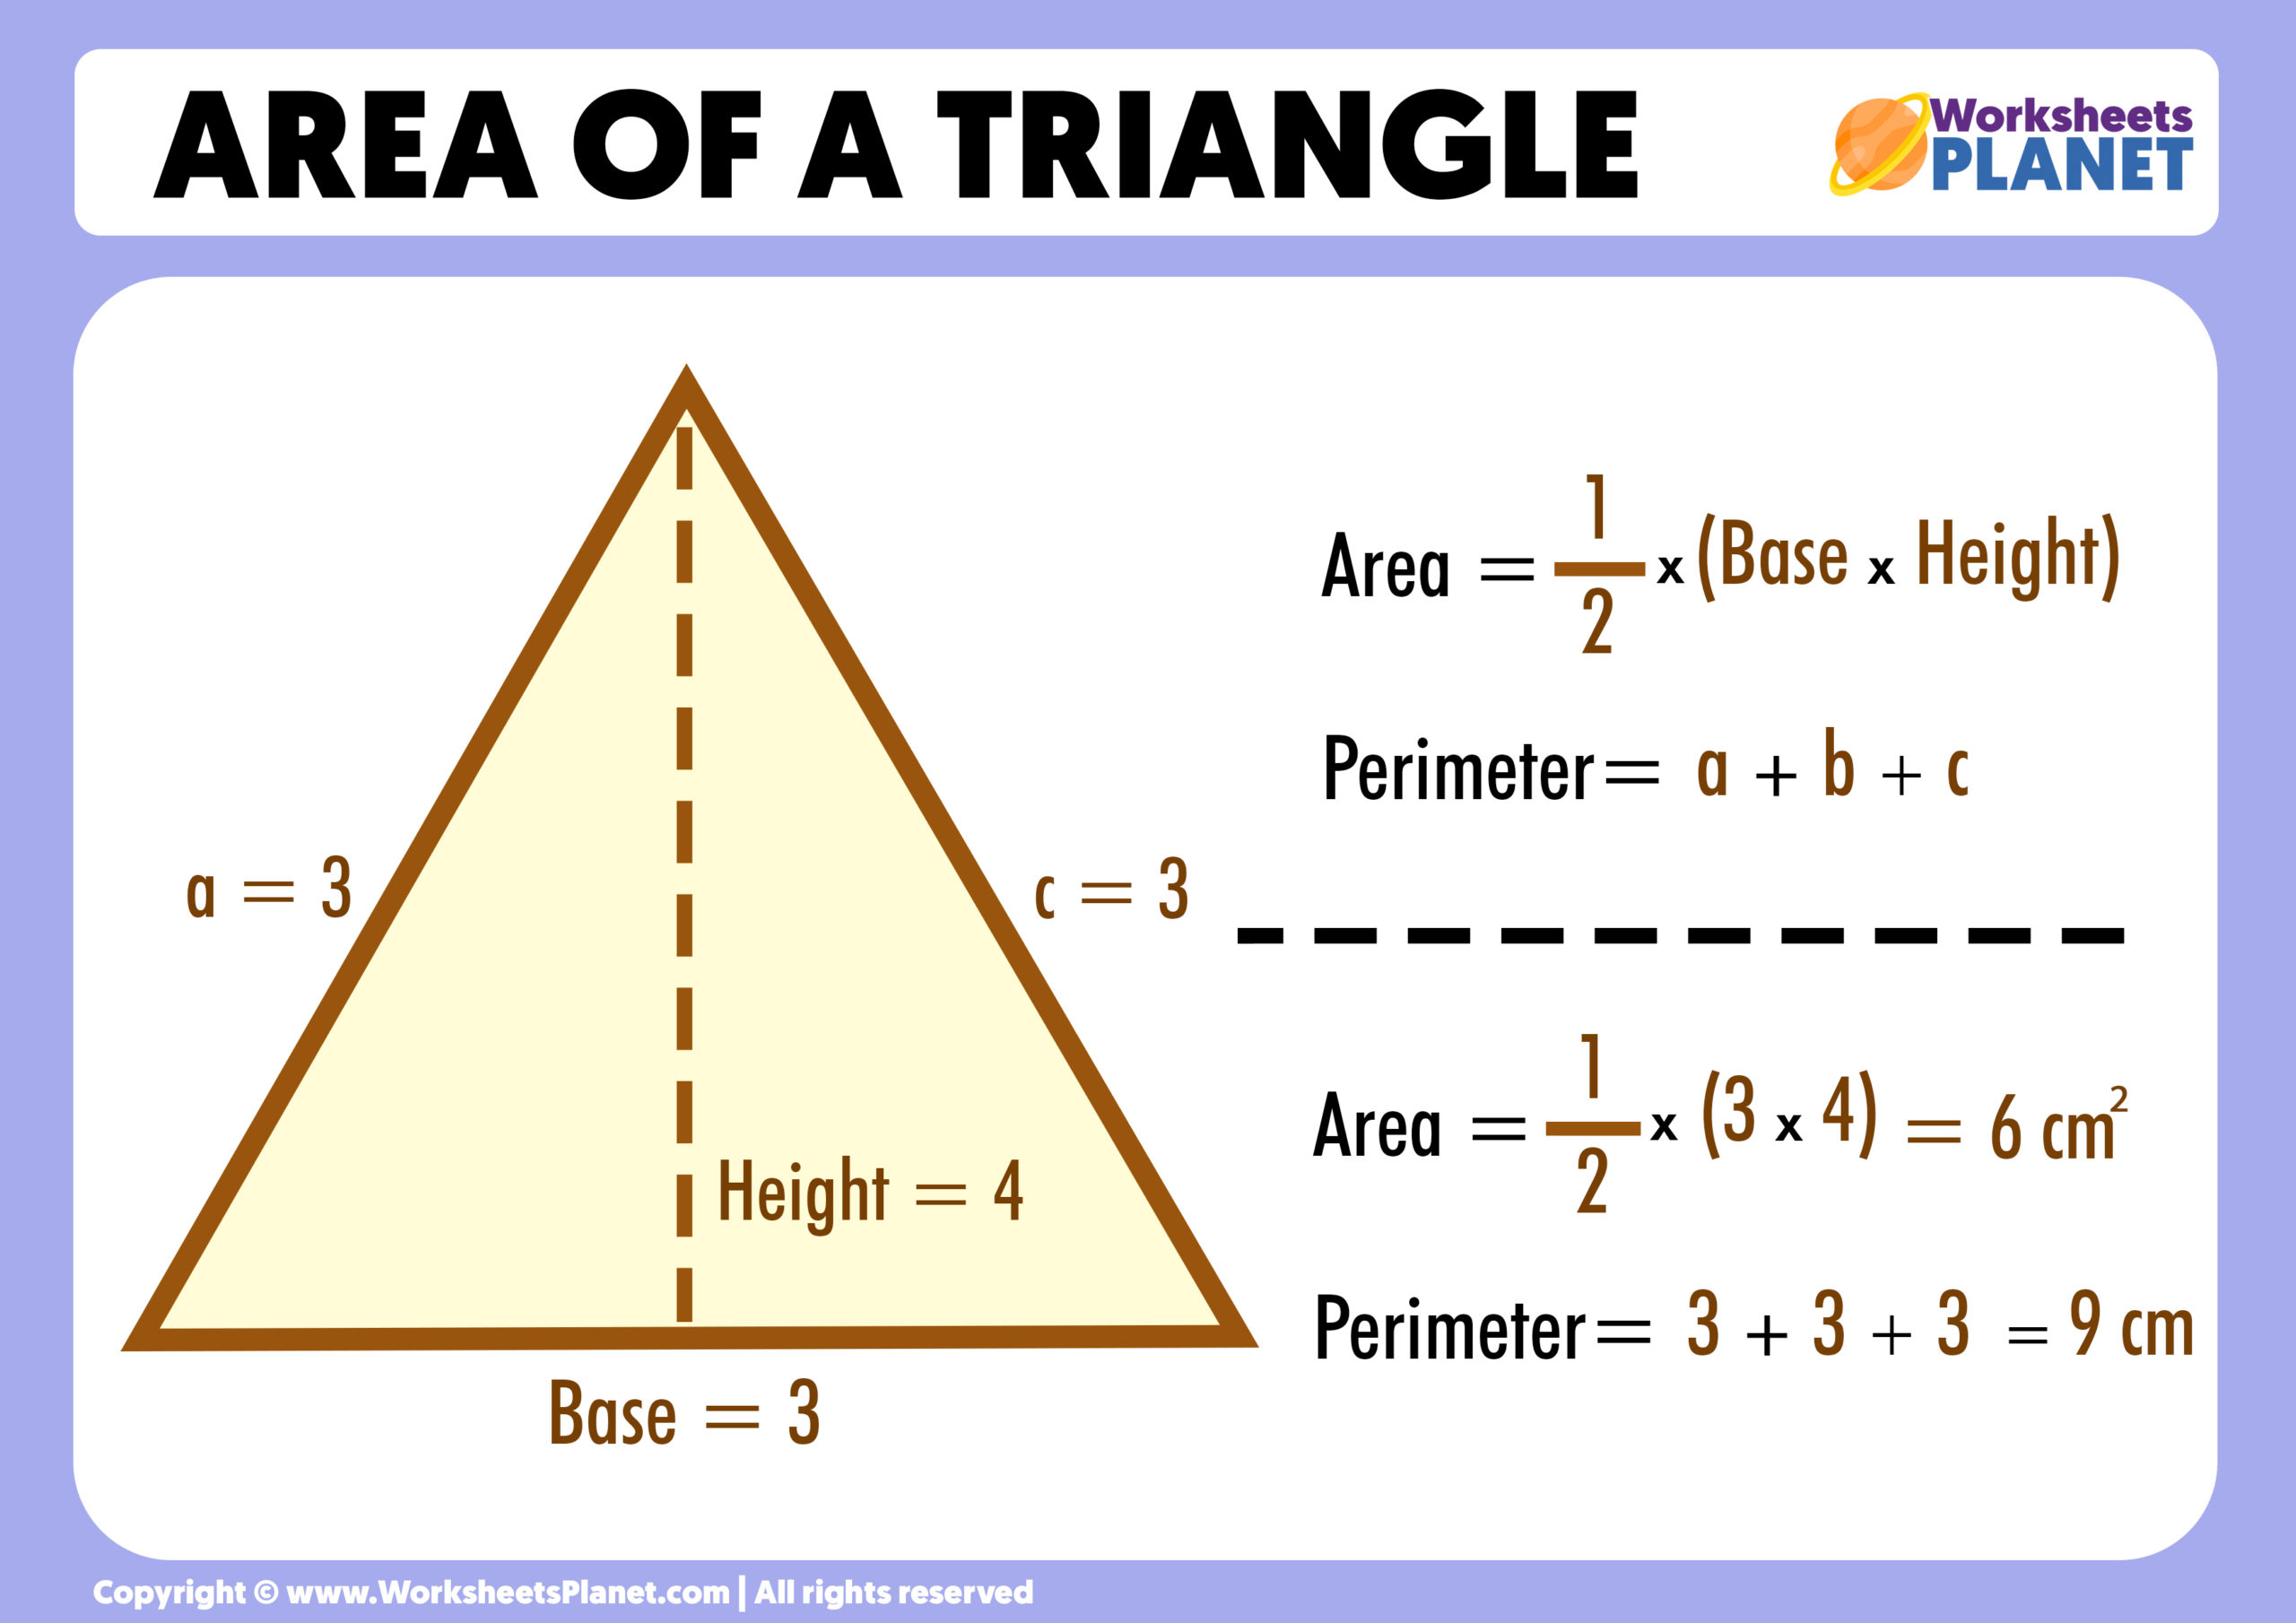 Area of a Triangle (Formula + Example)